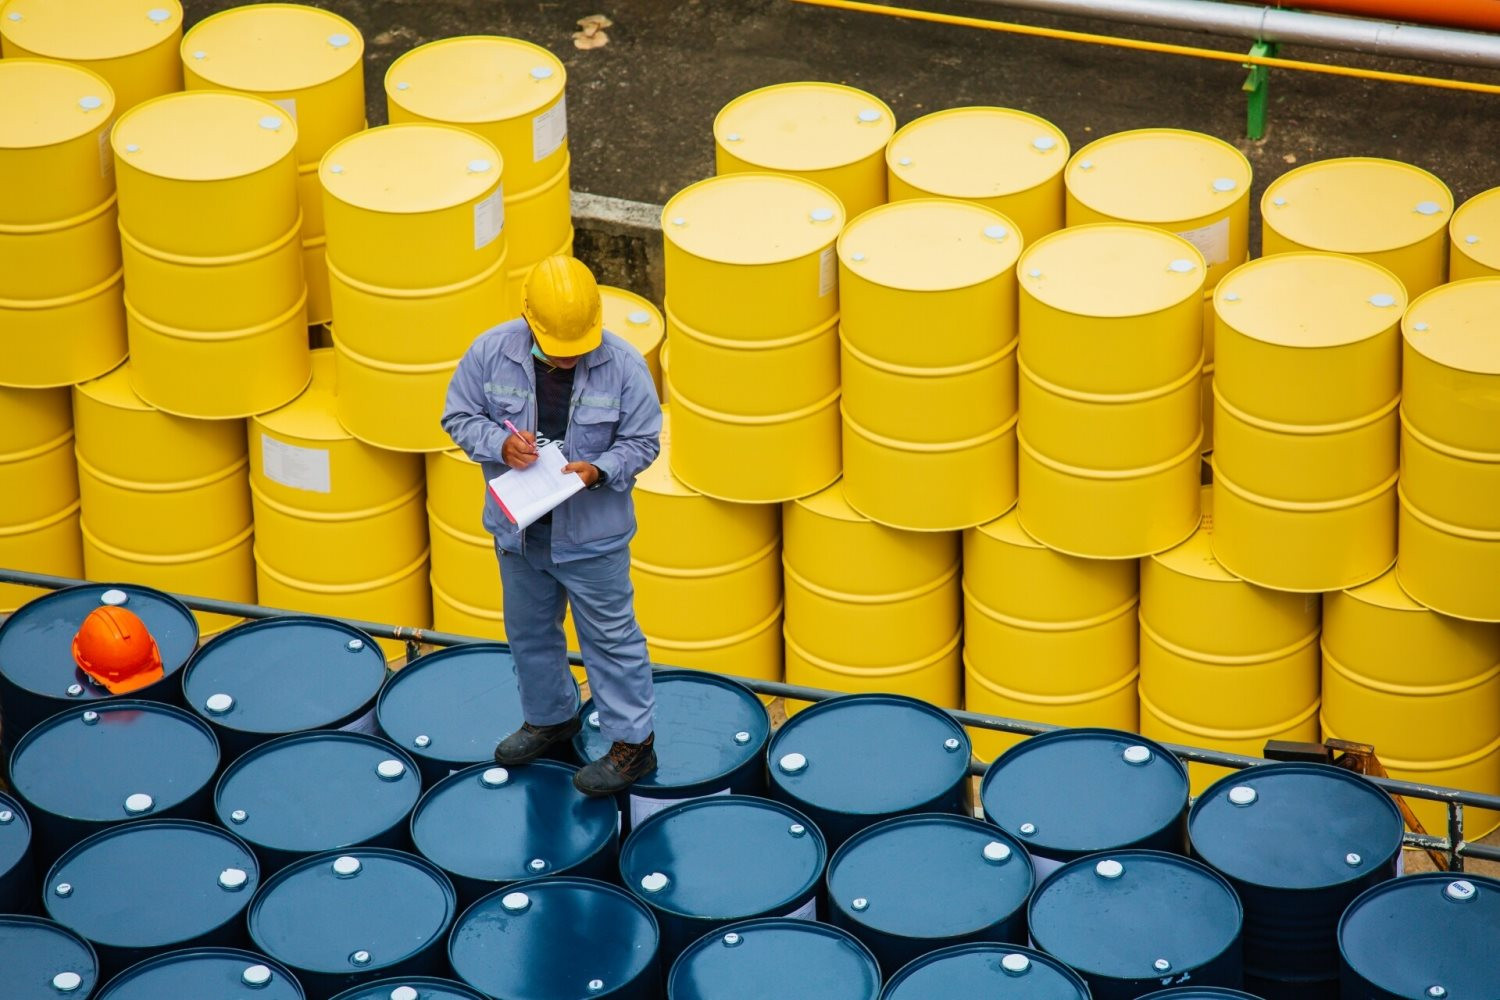  Báo cáo từ EIA không thể thúc đẩy lực mua, giá dầu thô tiếp tục giảm